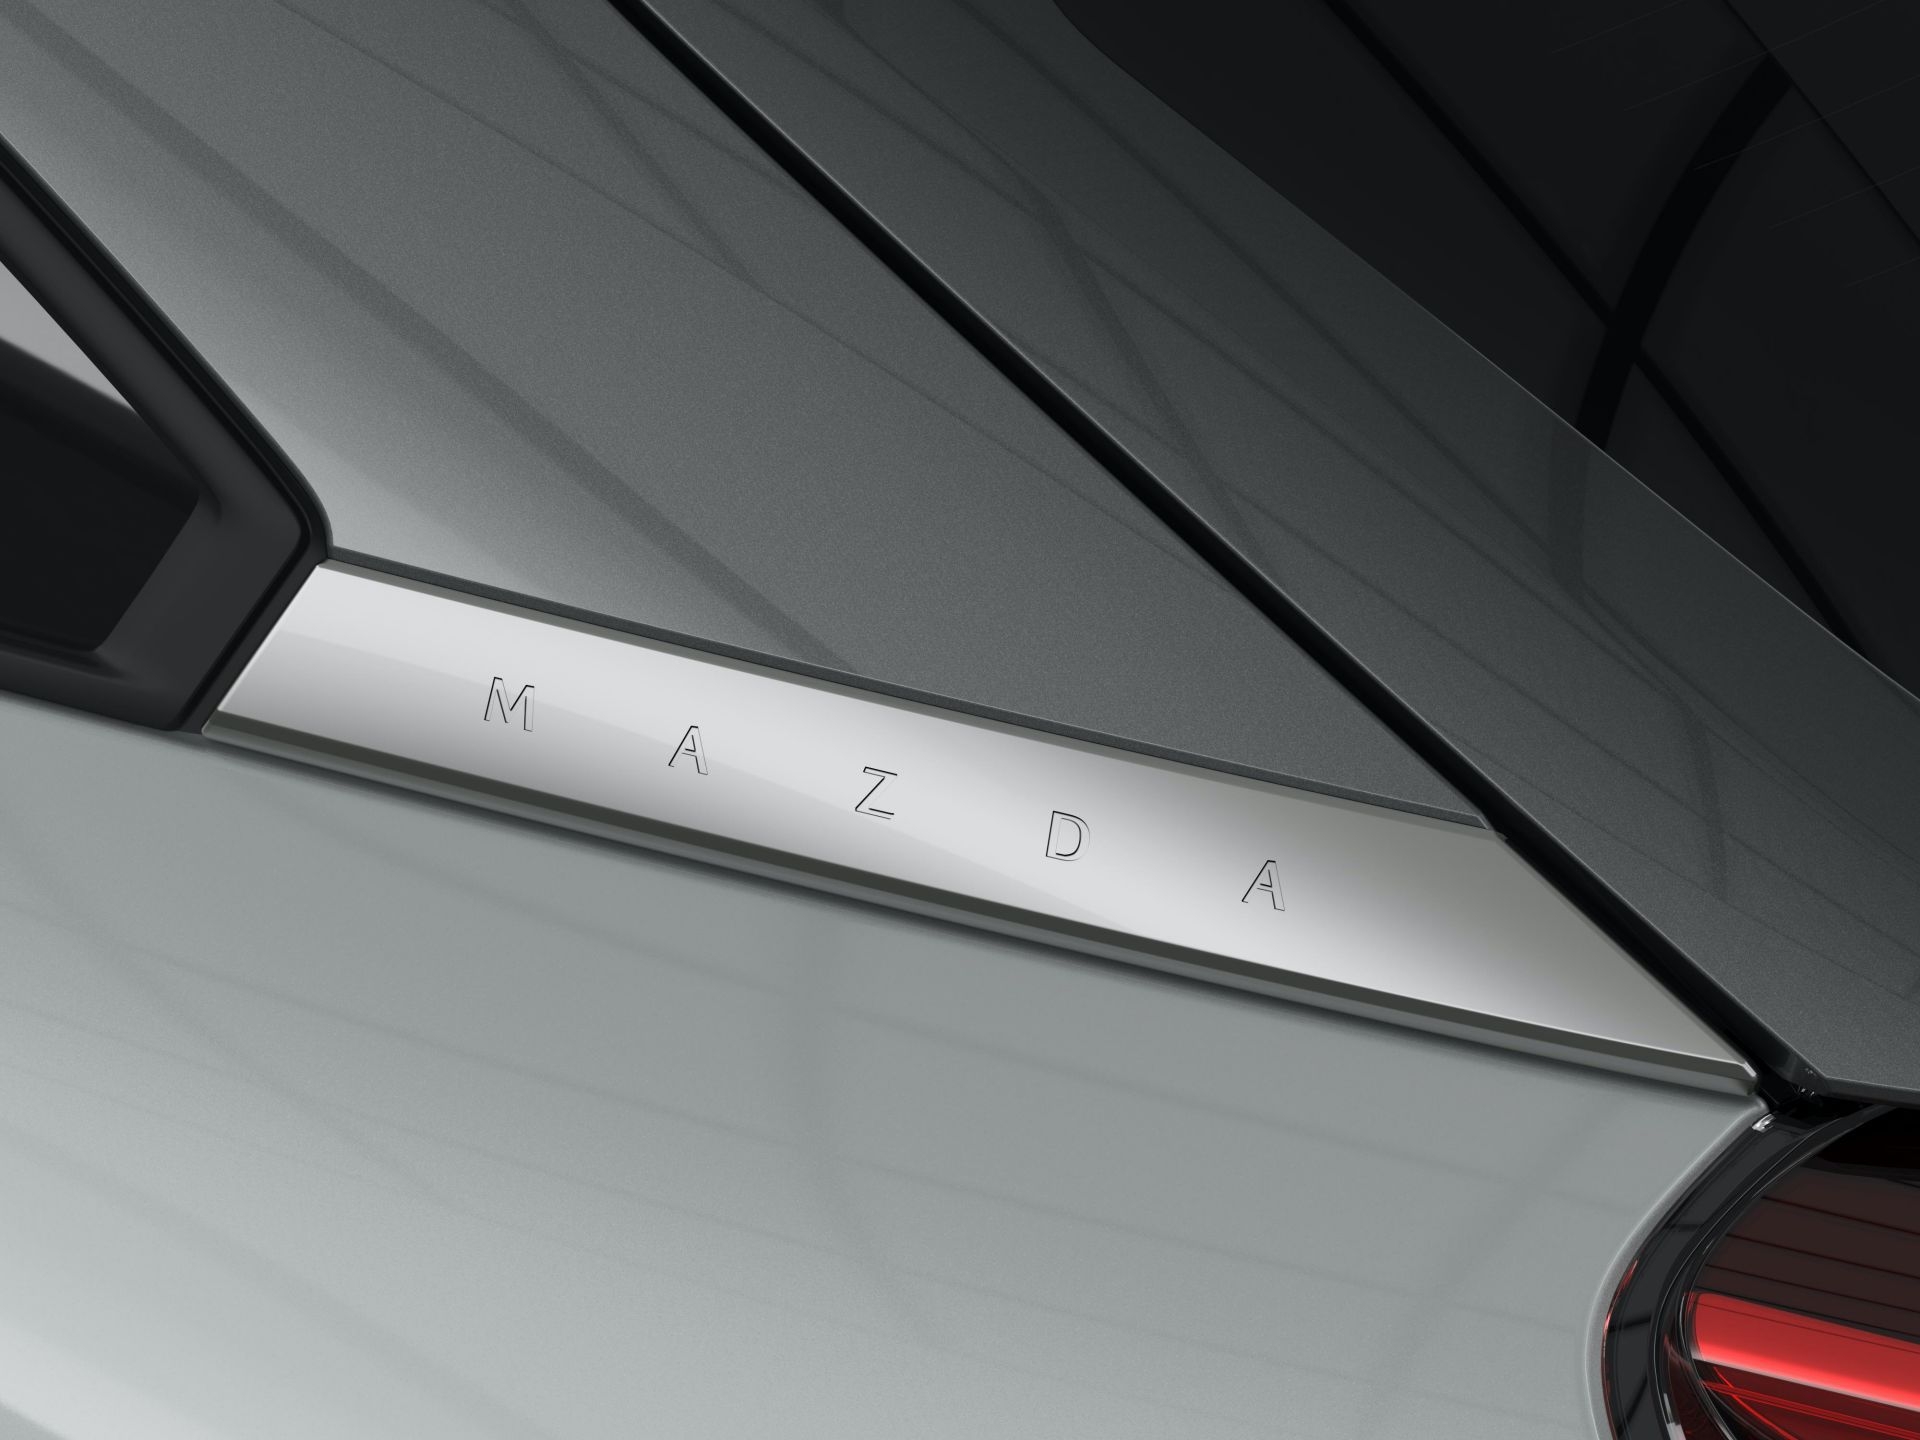 พร้อมบุกทั่วยุโรป! Mazda MX-30 รถยนต์พลังงานไฟฟ้าวางกำหนดขาย มิ.ย.นี้